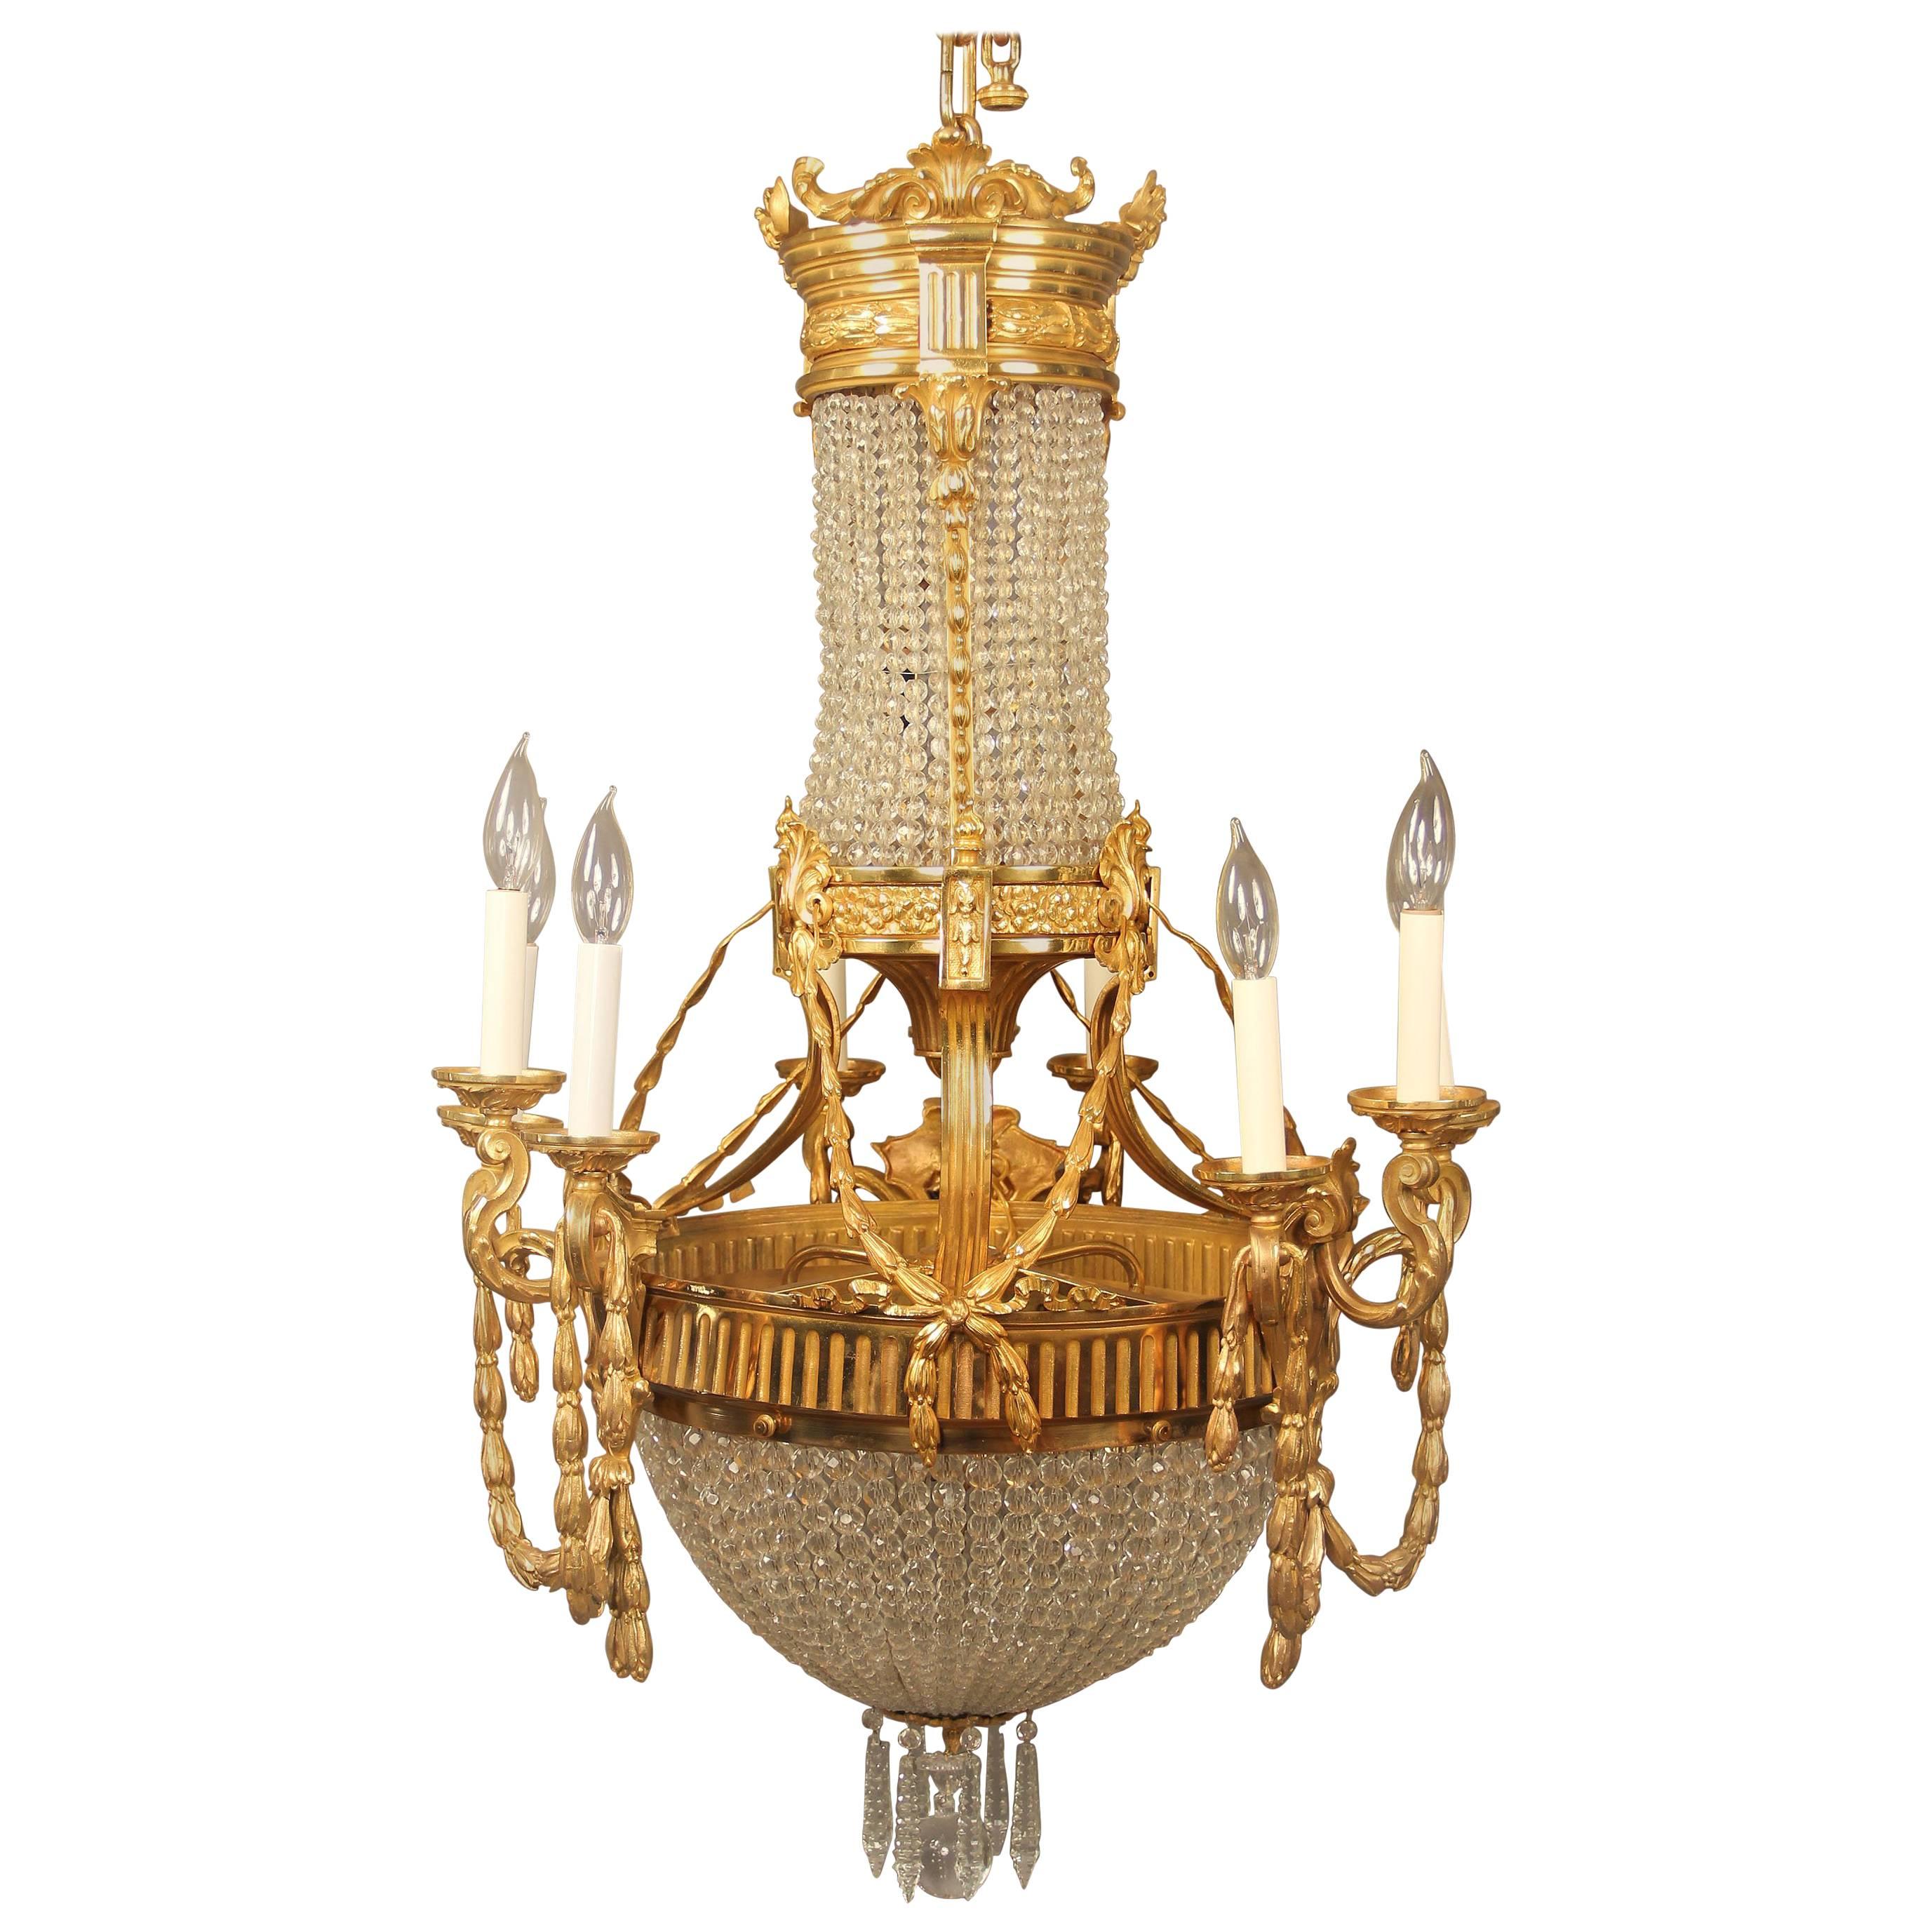  Intéressant lustre en bronze doré et cristal de la fin du 19e siècle